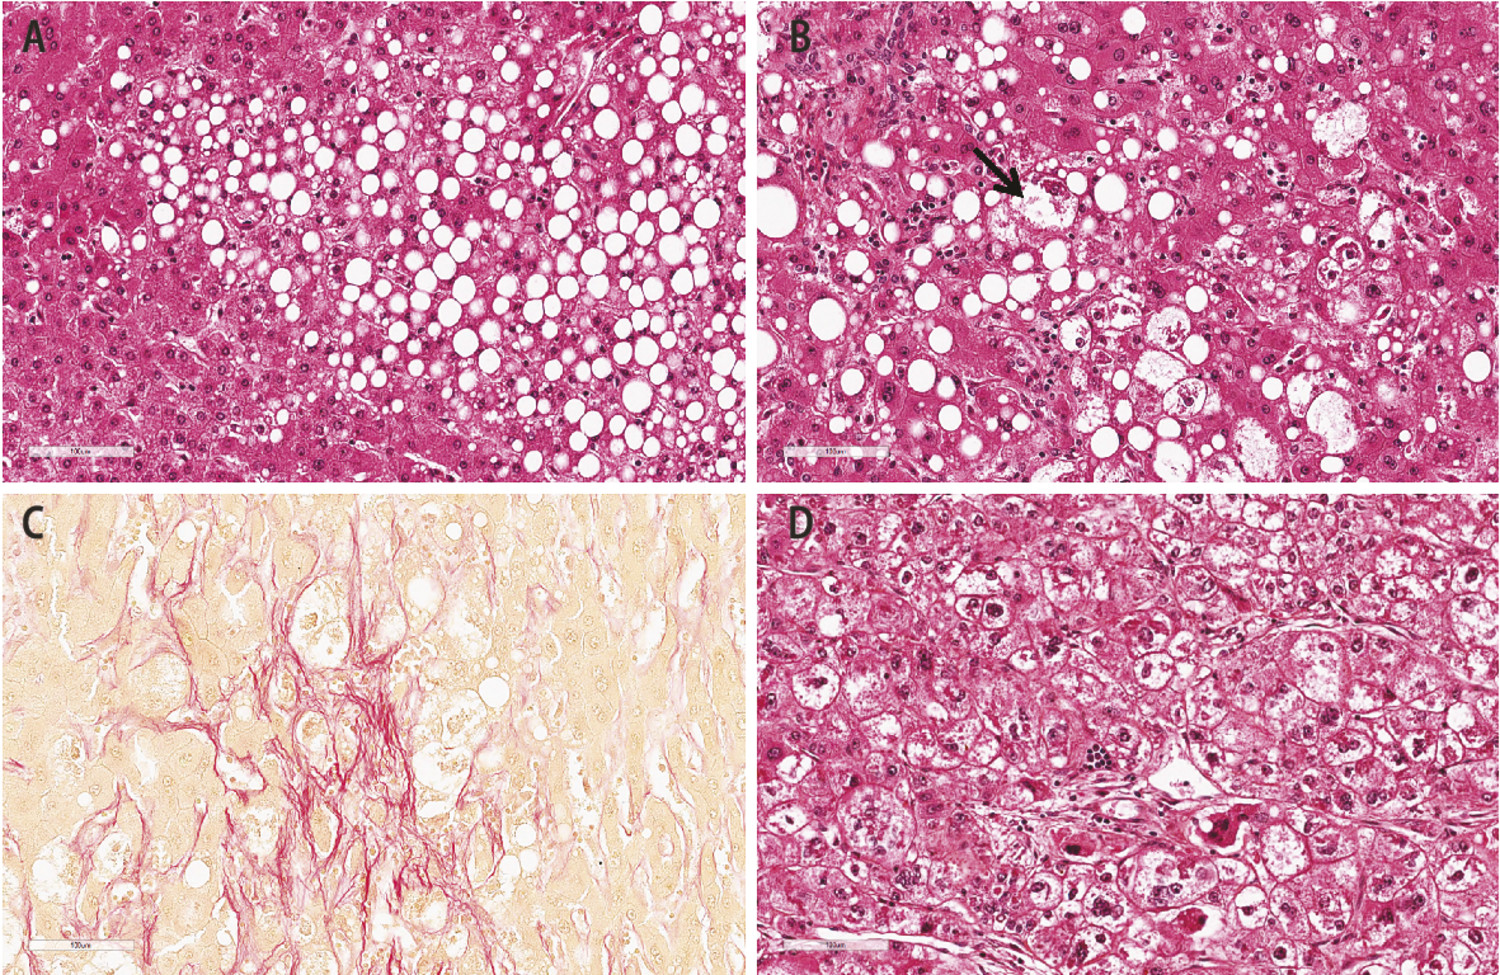 De la stéatopathie métabolique au carcinome hépatocellulaire - Figure 1